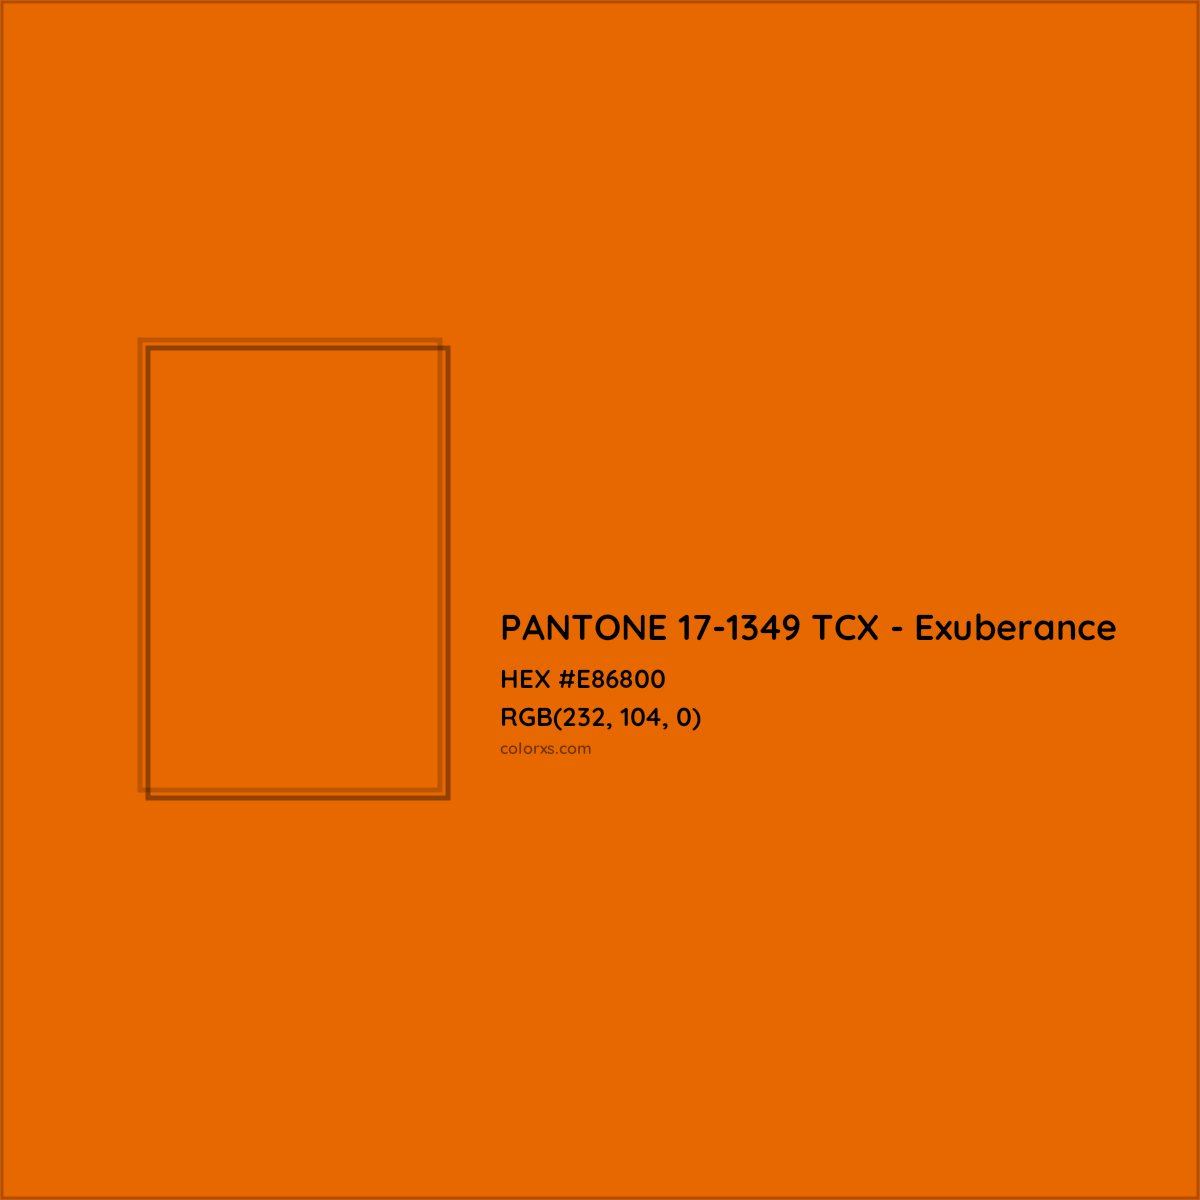 HEX #E86800 PANTONE 17-1349 TCX - Exuberance CMS Pantone TCX - Color Code